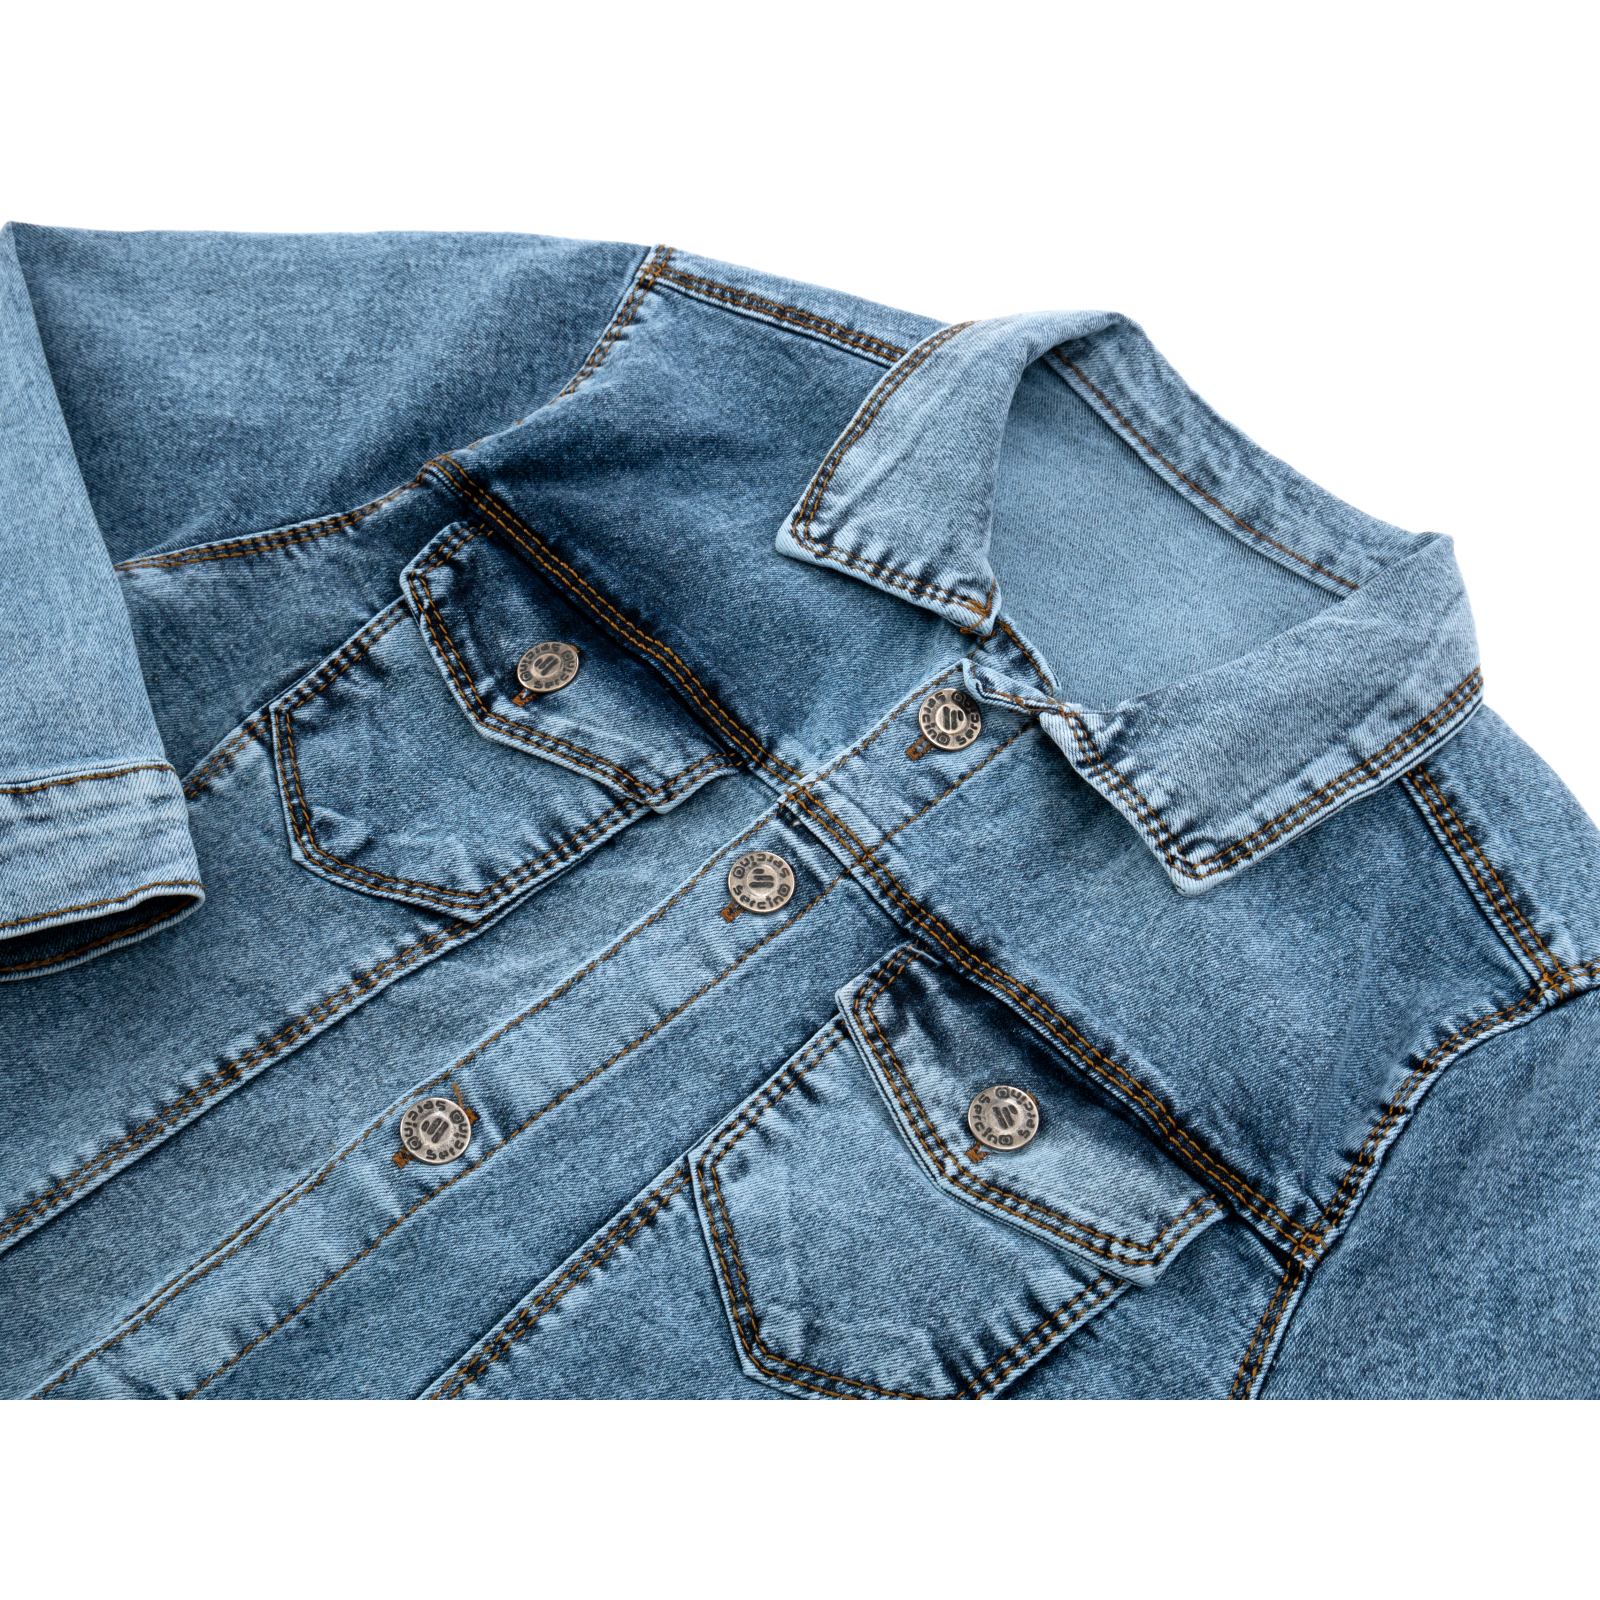 Піджак Sercino джинсовий (99723-146B-blue) зображення 3